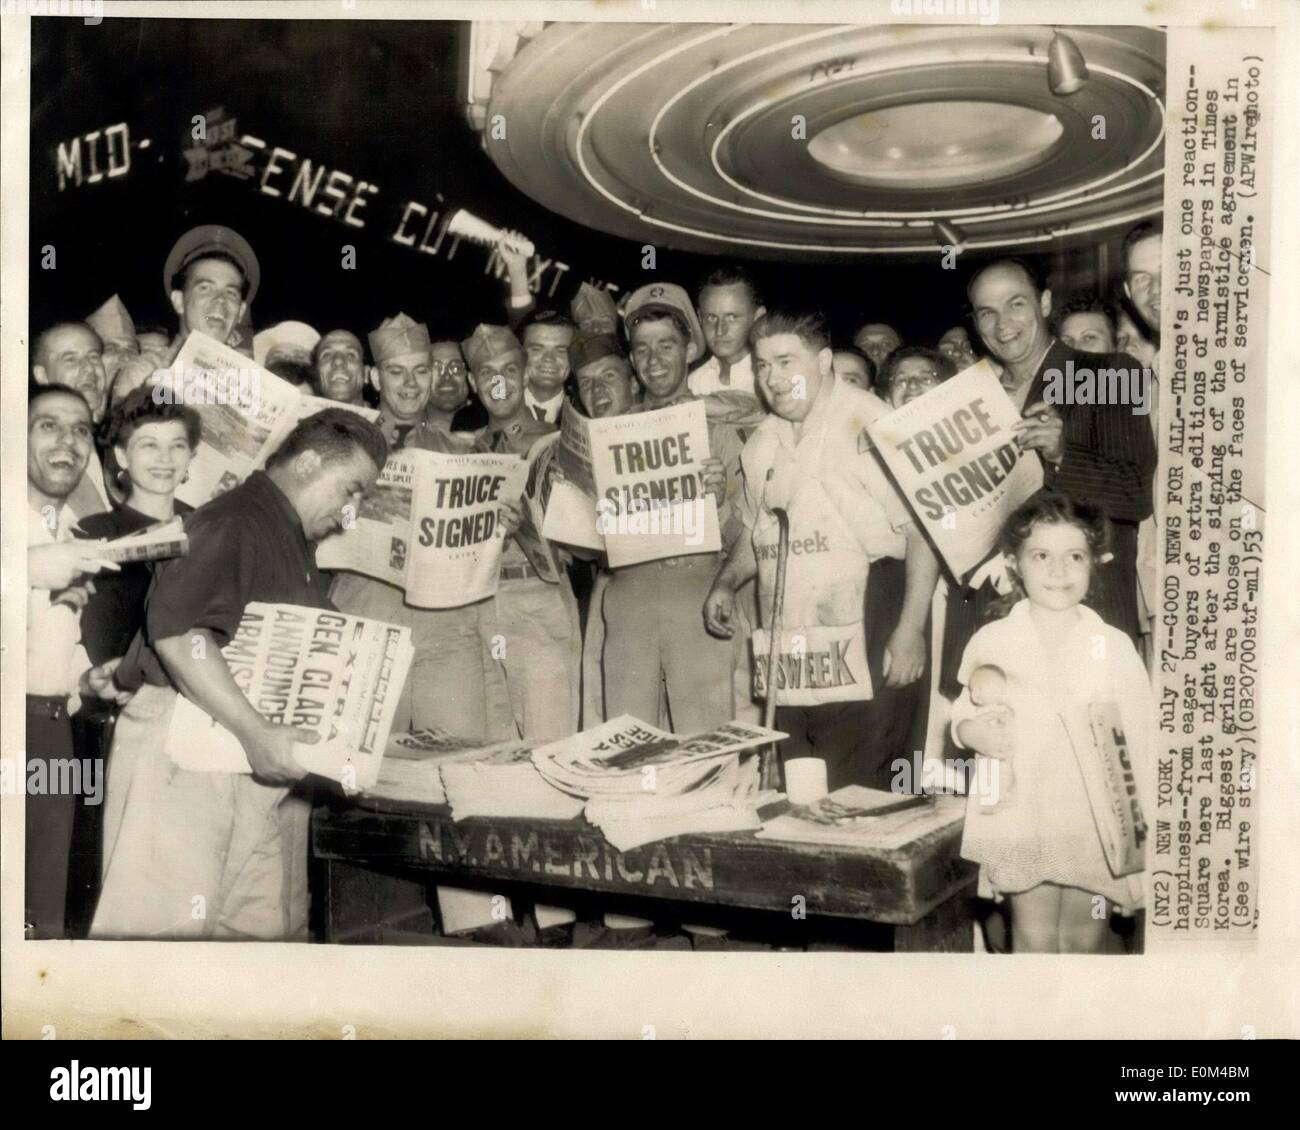 Juillet 27, 1953 - Actualités pour tous : il n'y a qu'une réaction : le bonheur des acheteurs désireux d'une édition spéciale des journaux sur Times Square, sa dernière nuit après la signature de l'accord d'armistice en Corée. Plus grands sont les sourires sur les visages des soldats. Banque D'Images